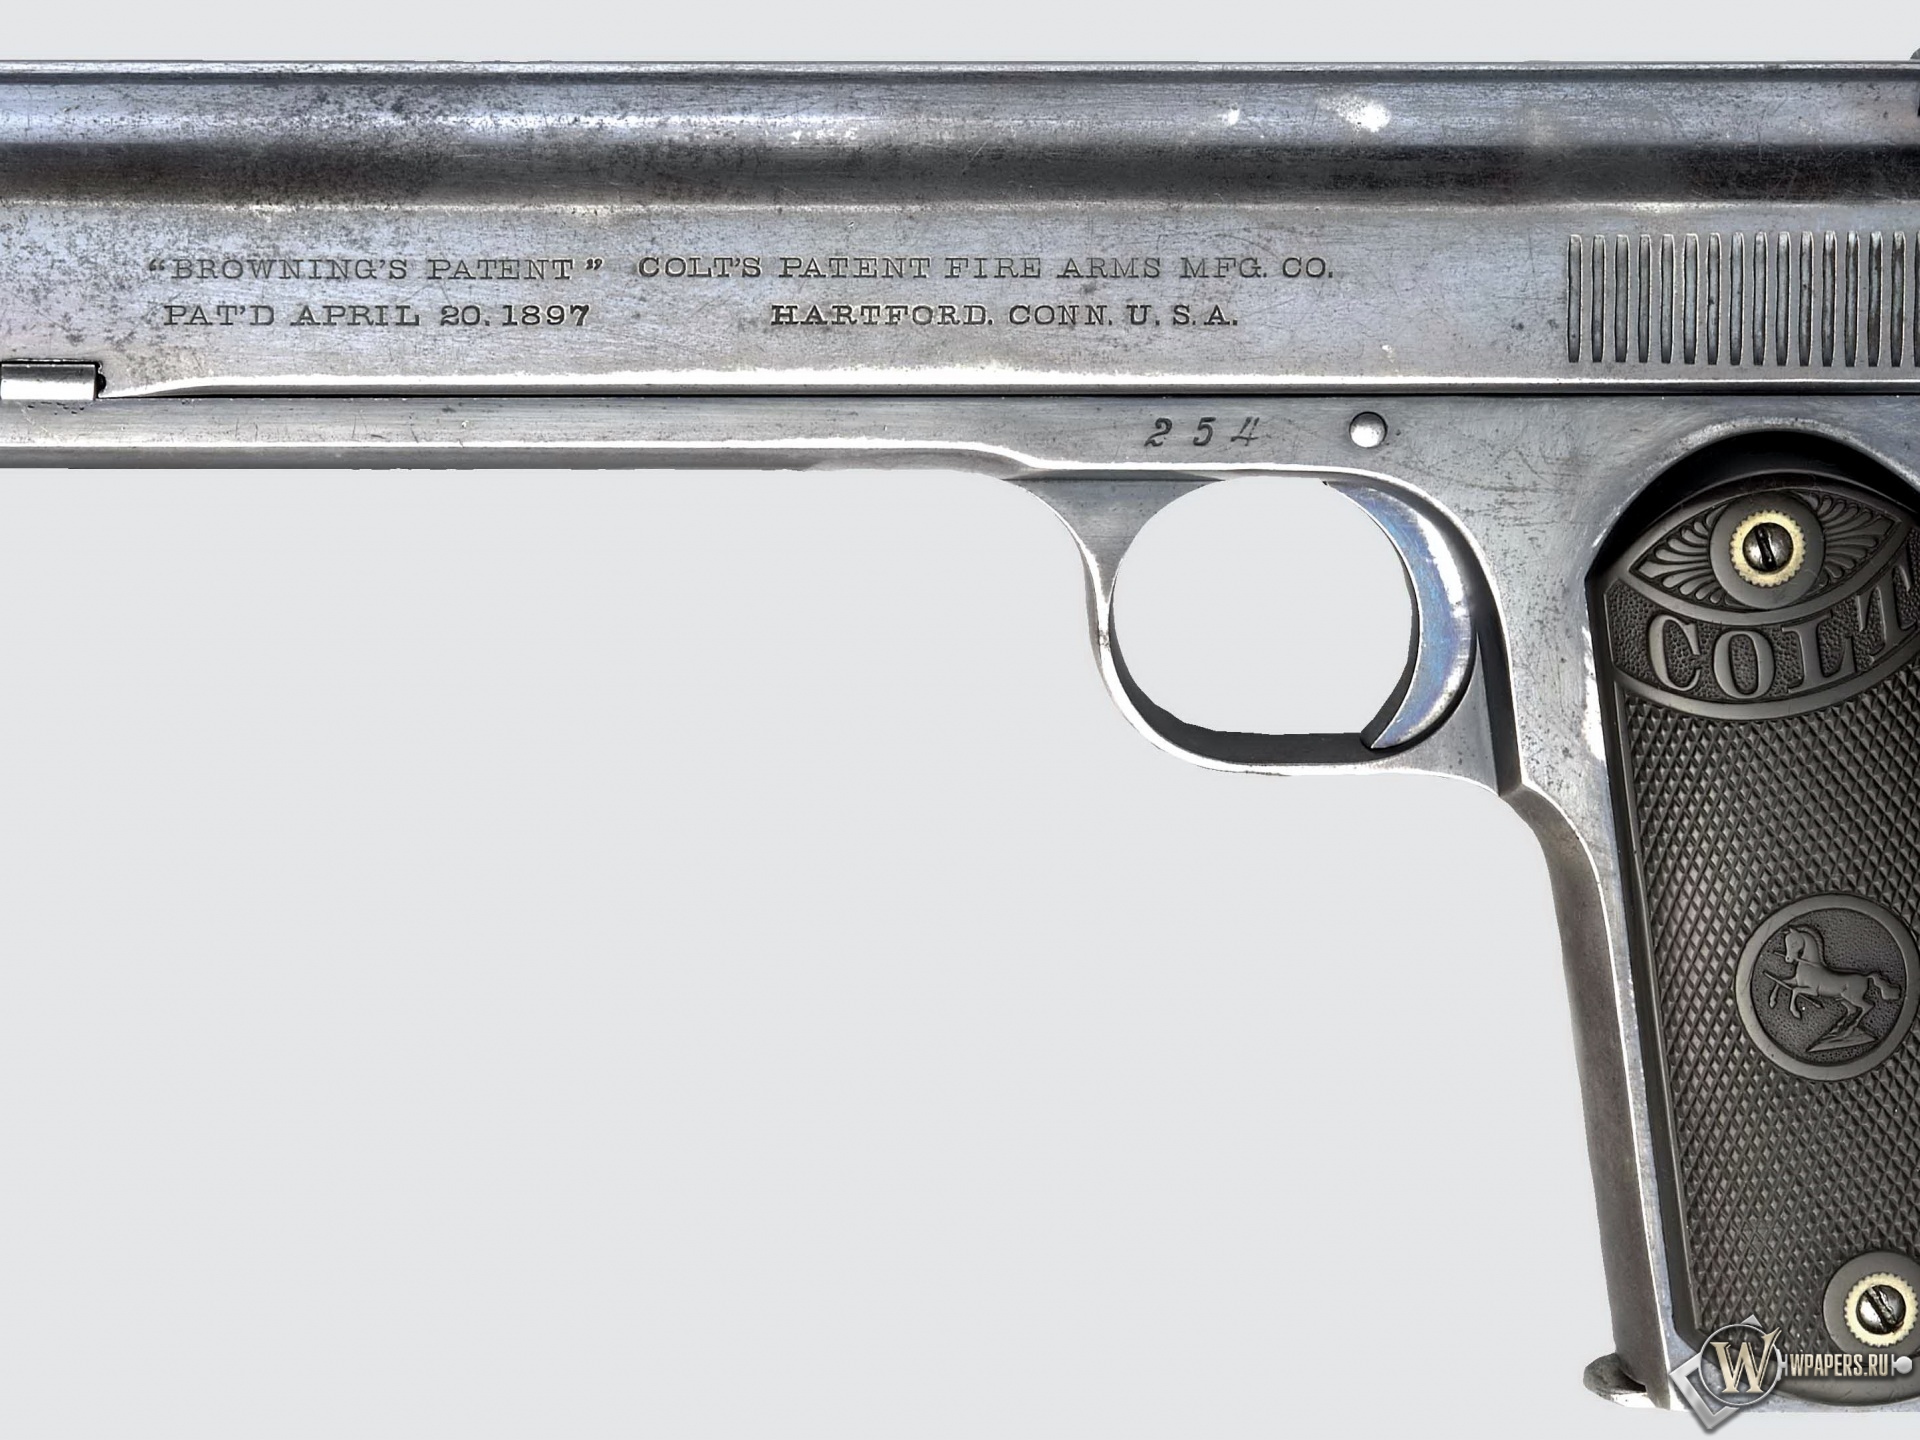 Colt M1900 automatic pistol 1920x1440